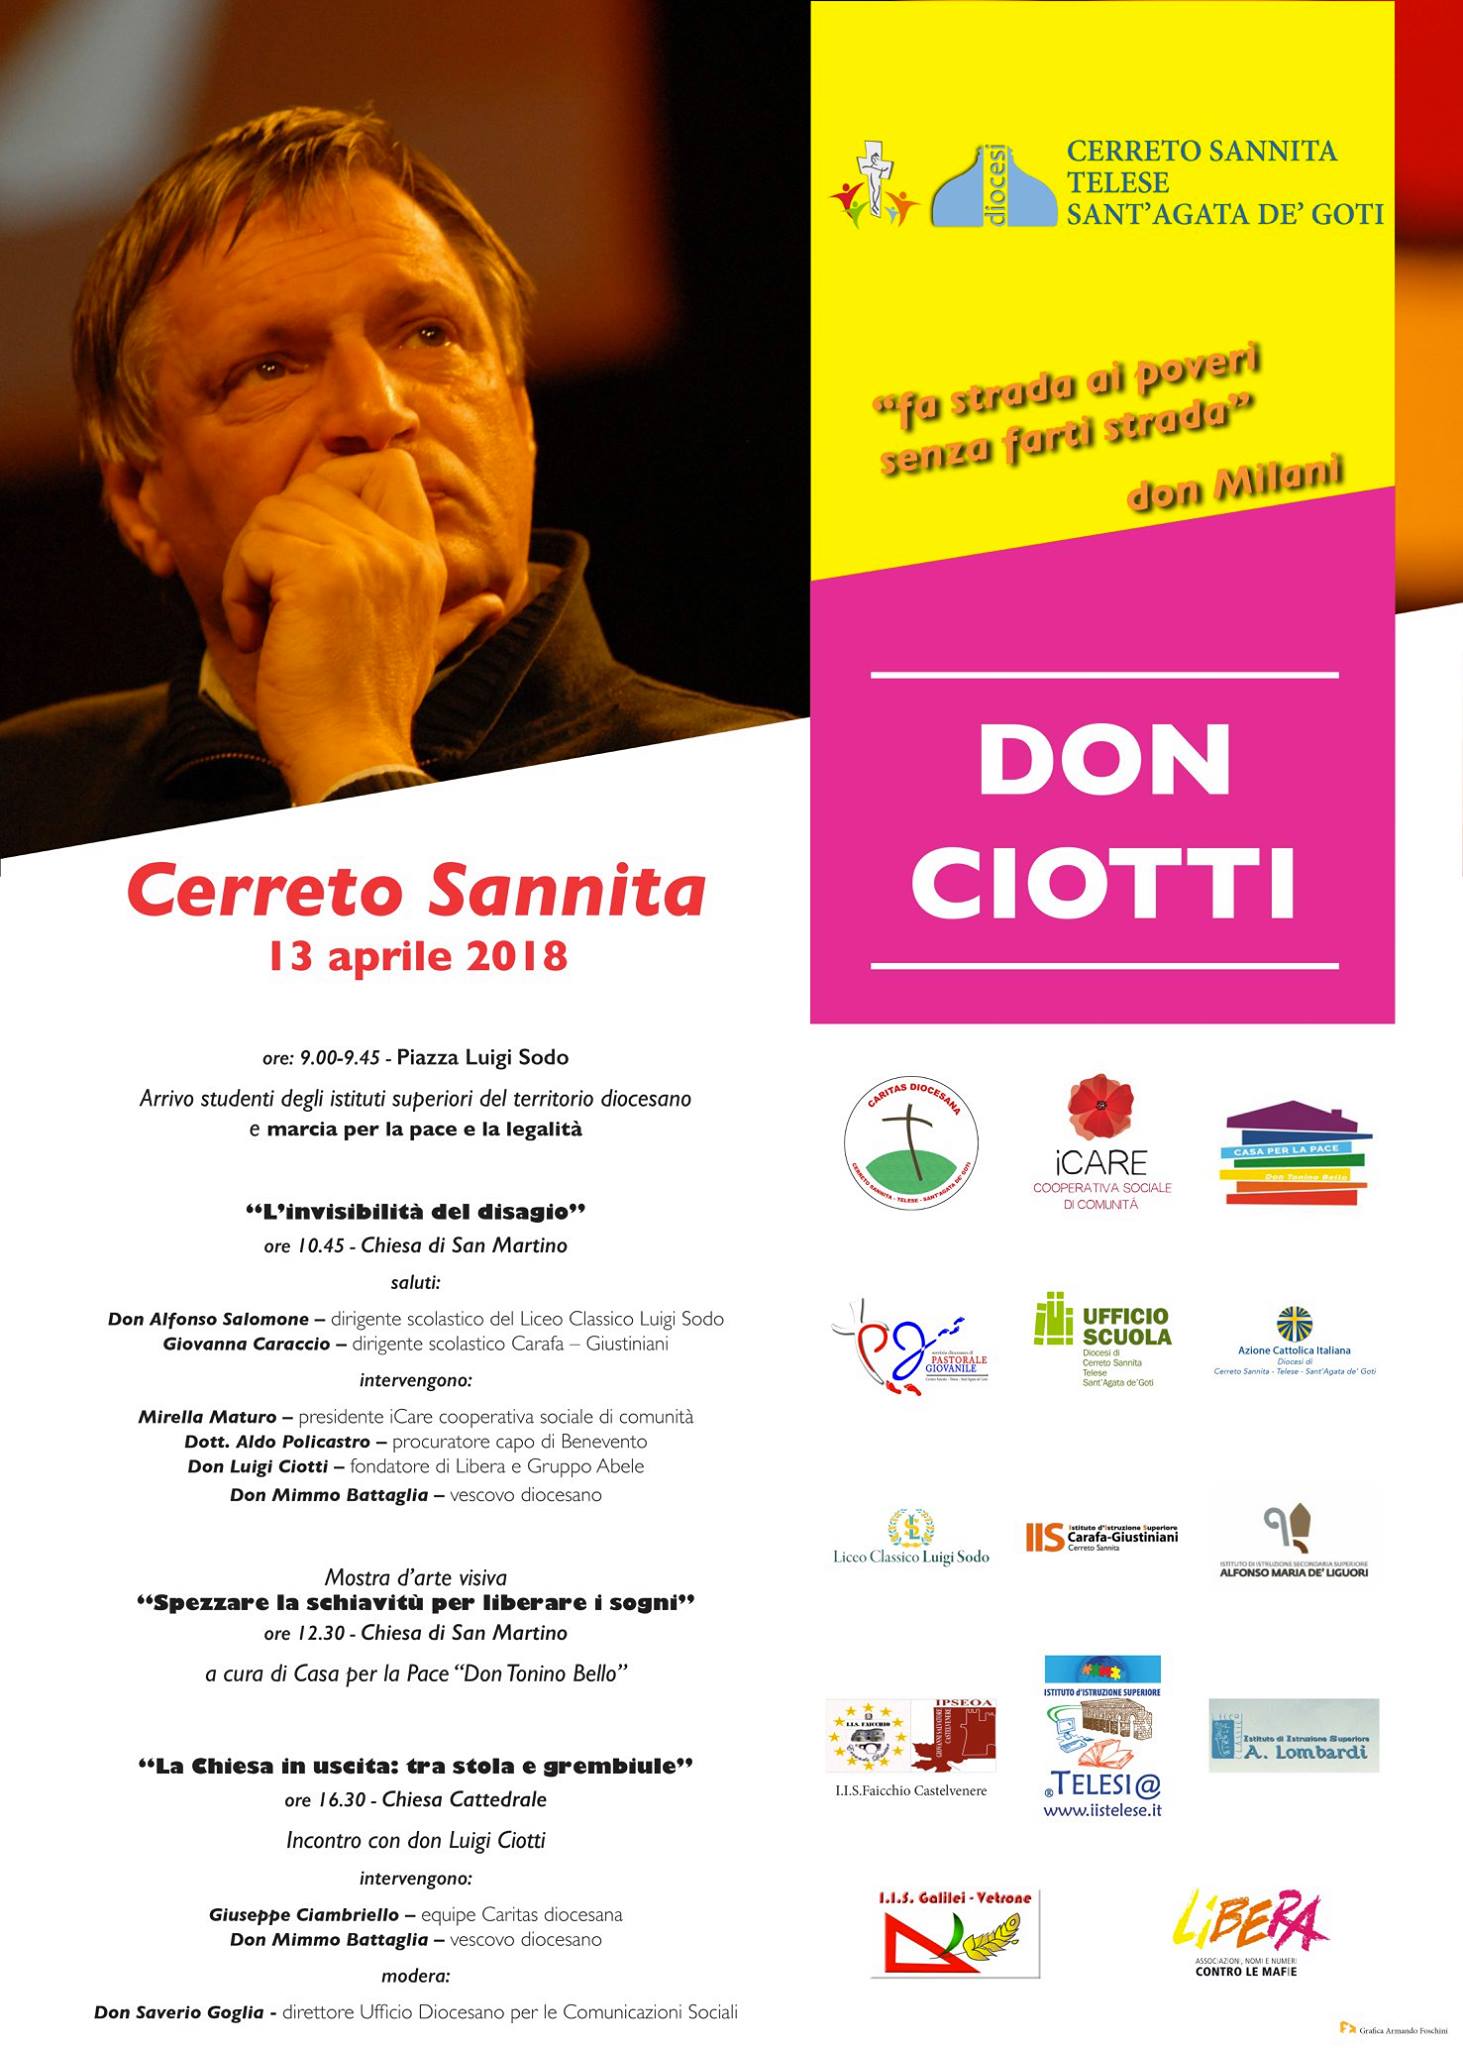 Don Ciotti